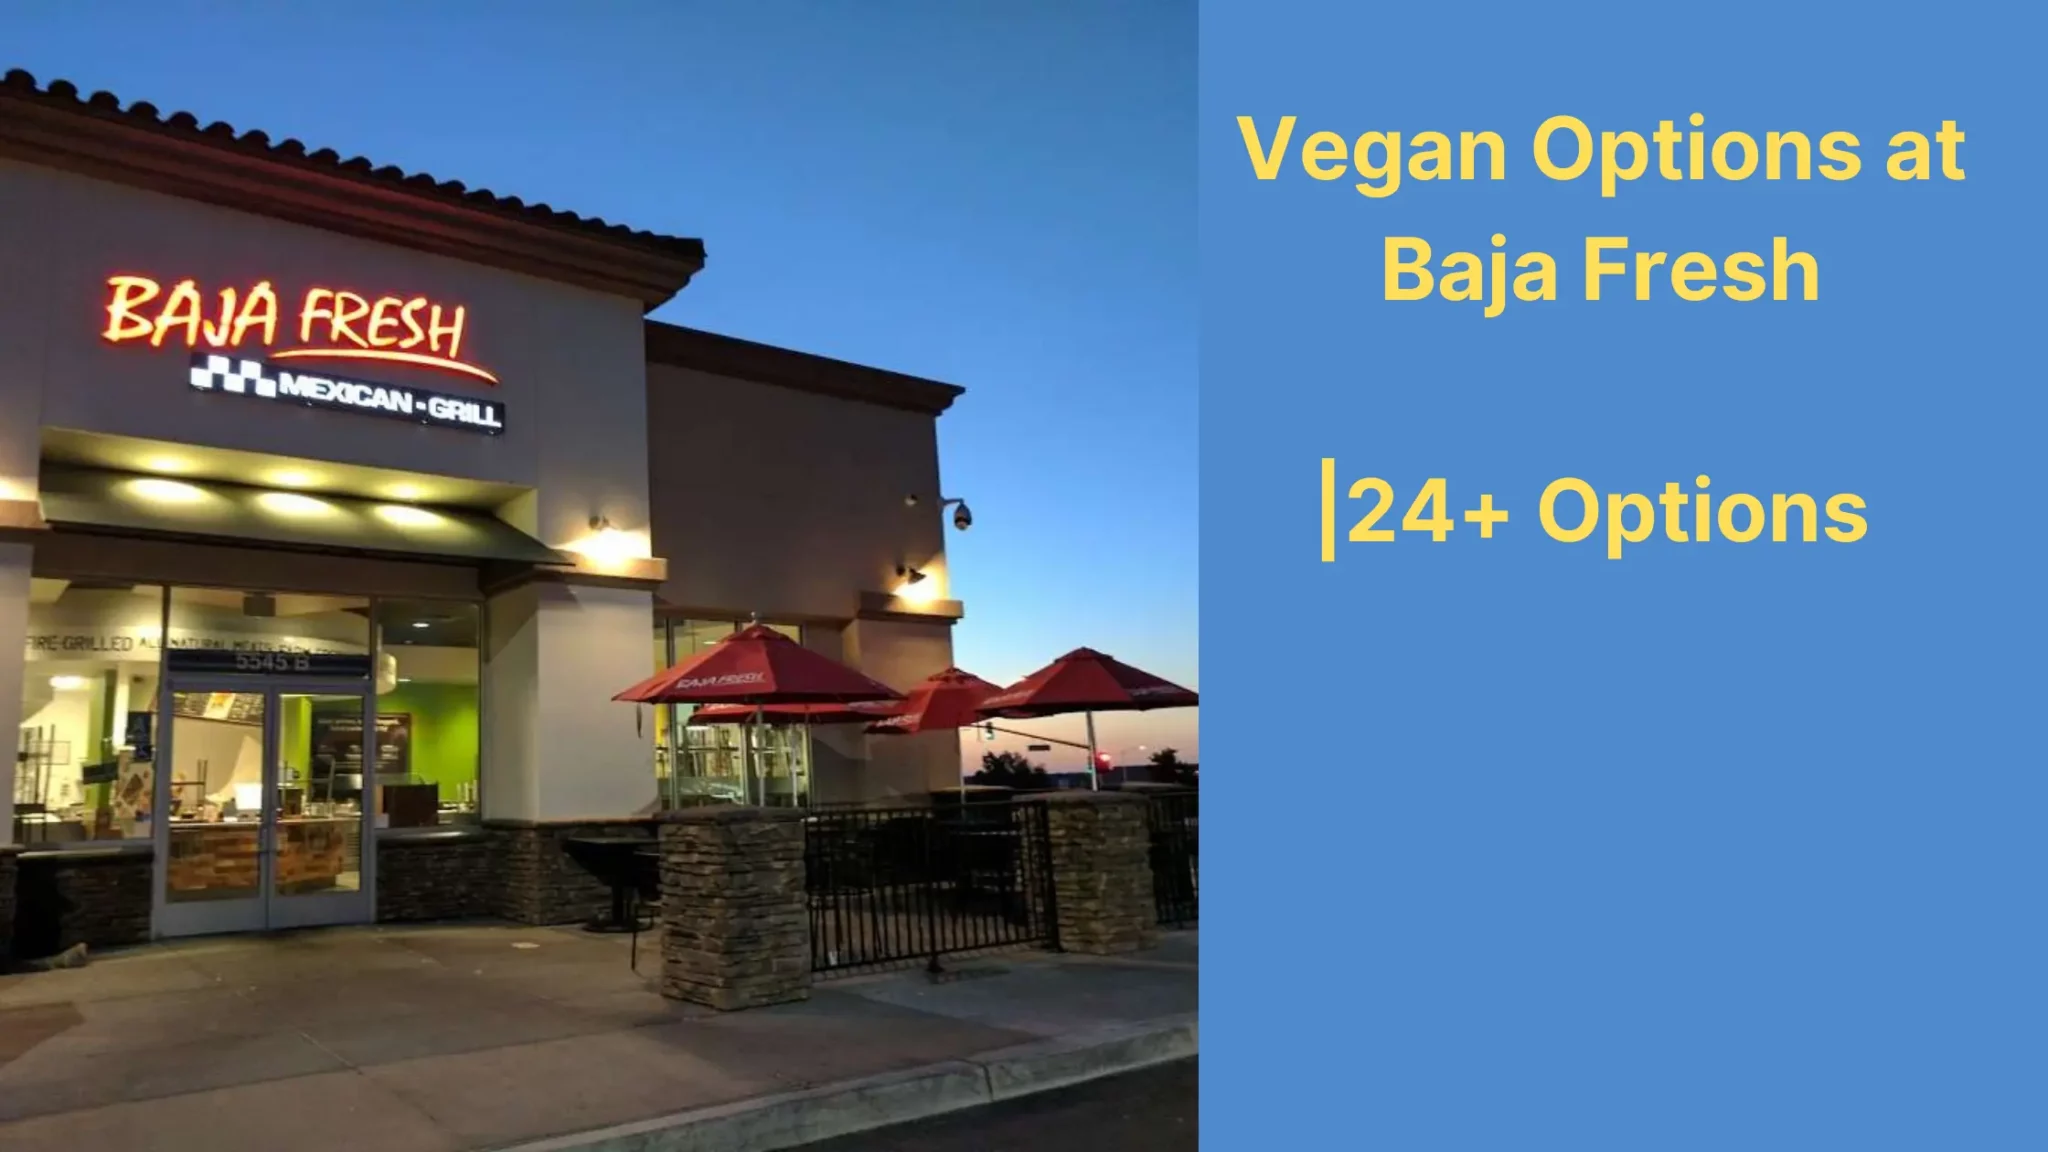 Vegan Options at Baja Fresh